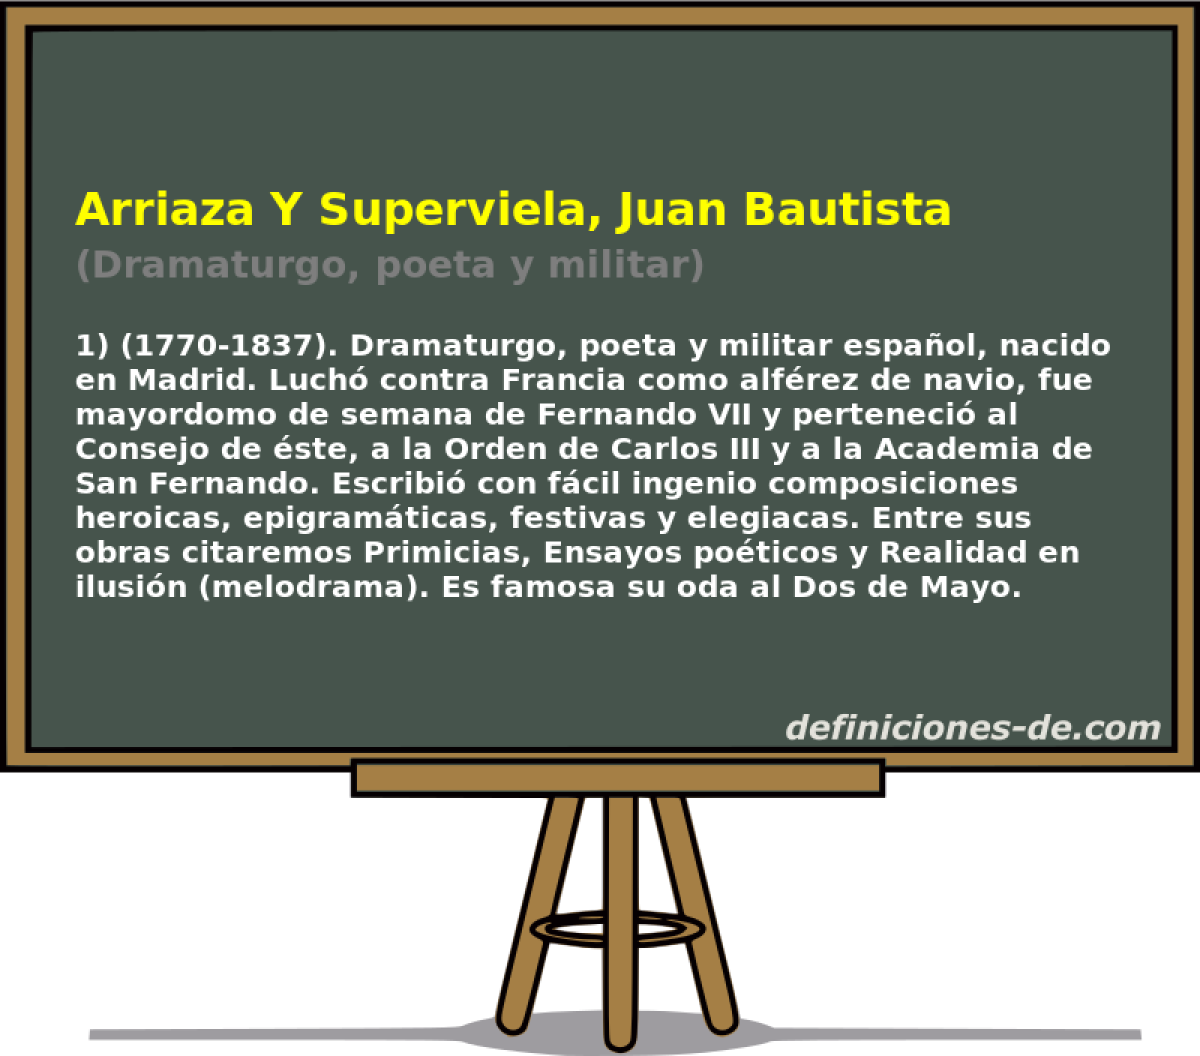 Arriaza Y Superviela, Juan Bautista (Dramaturgo, poeta y militar)